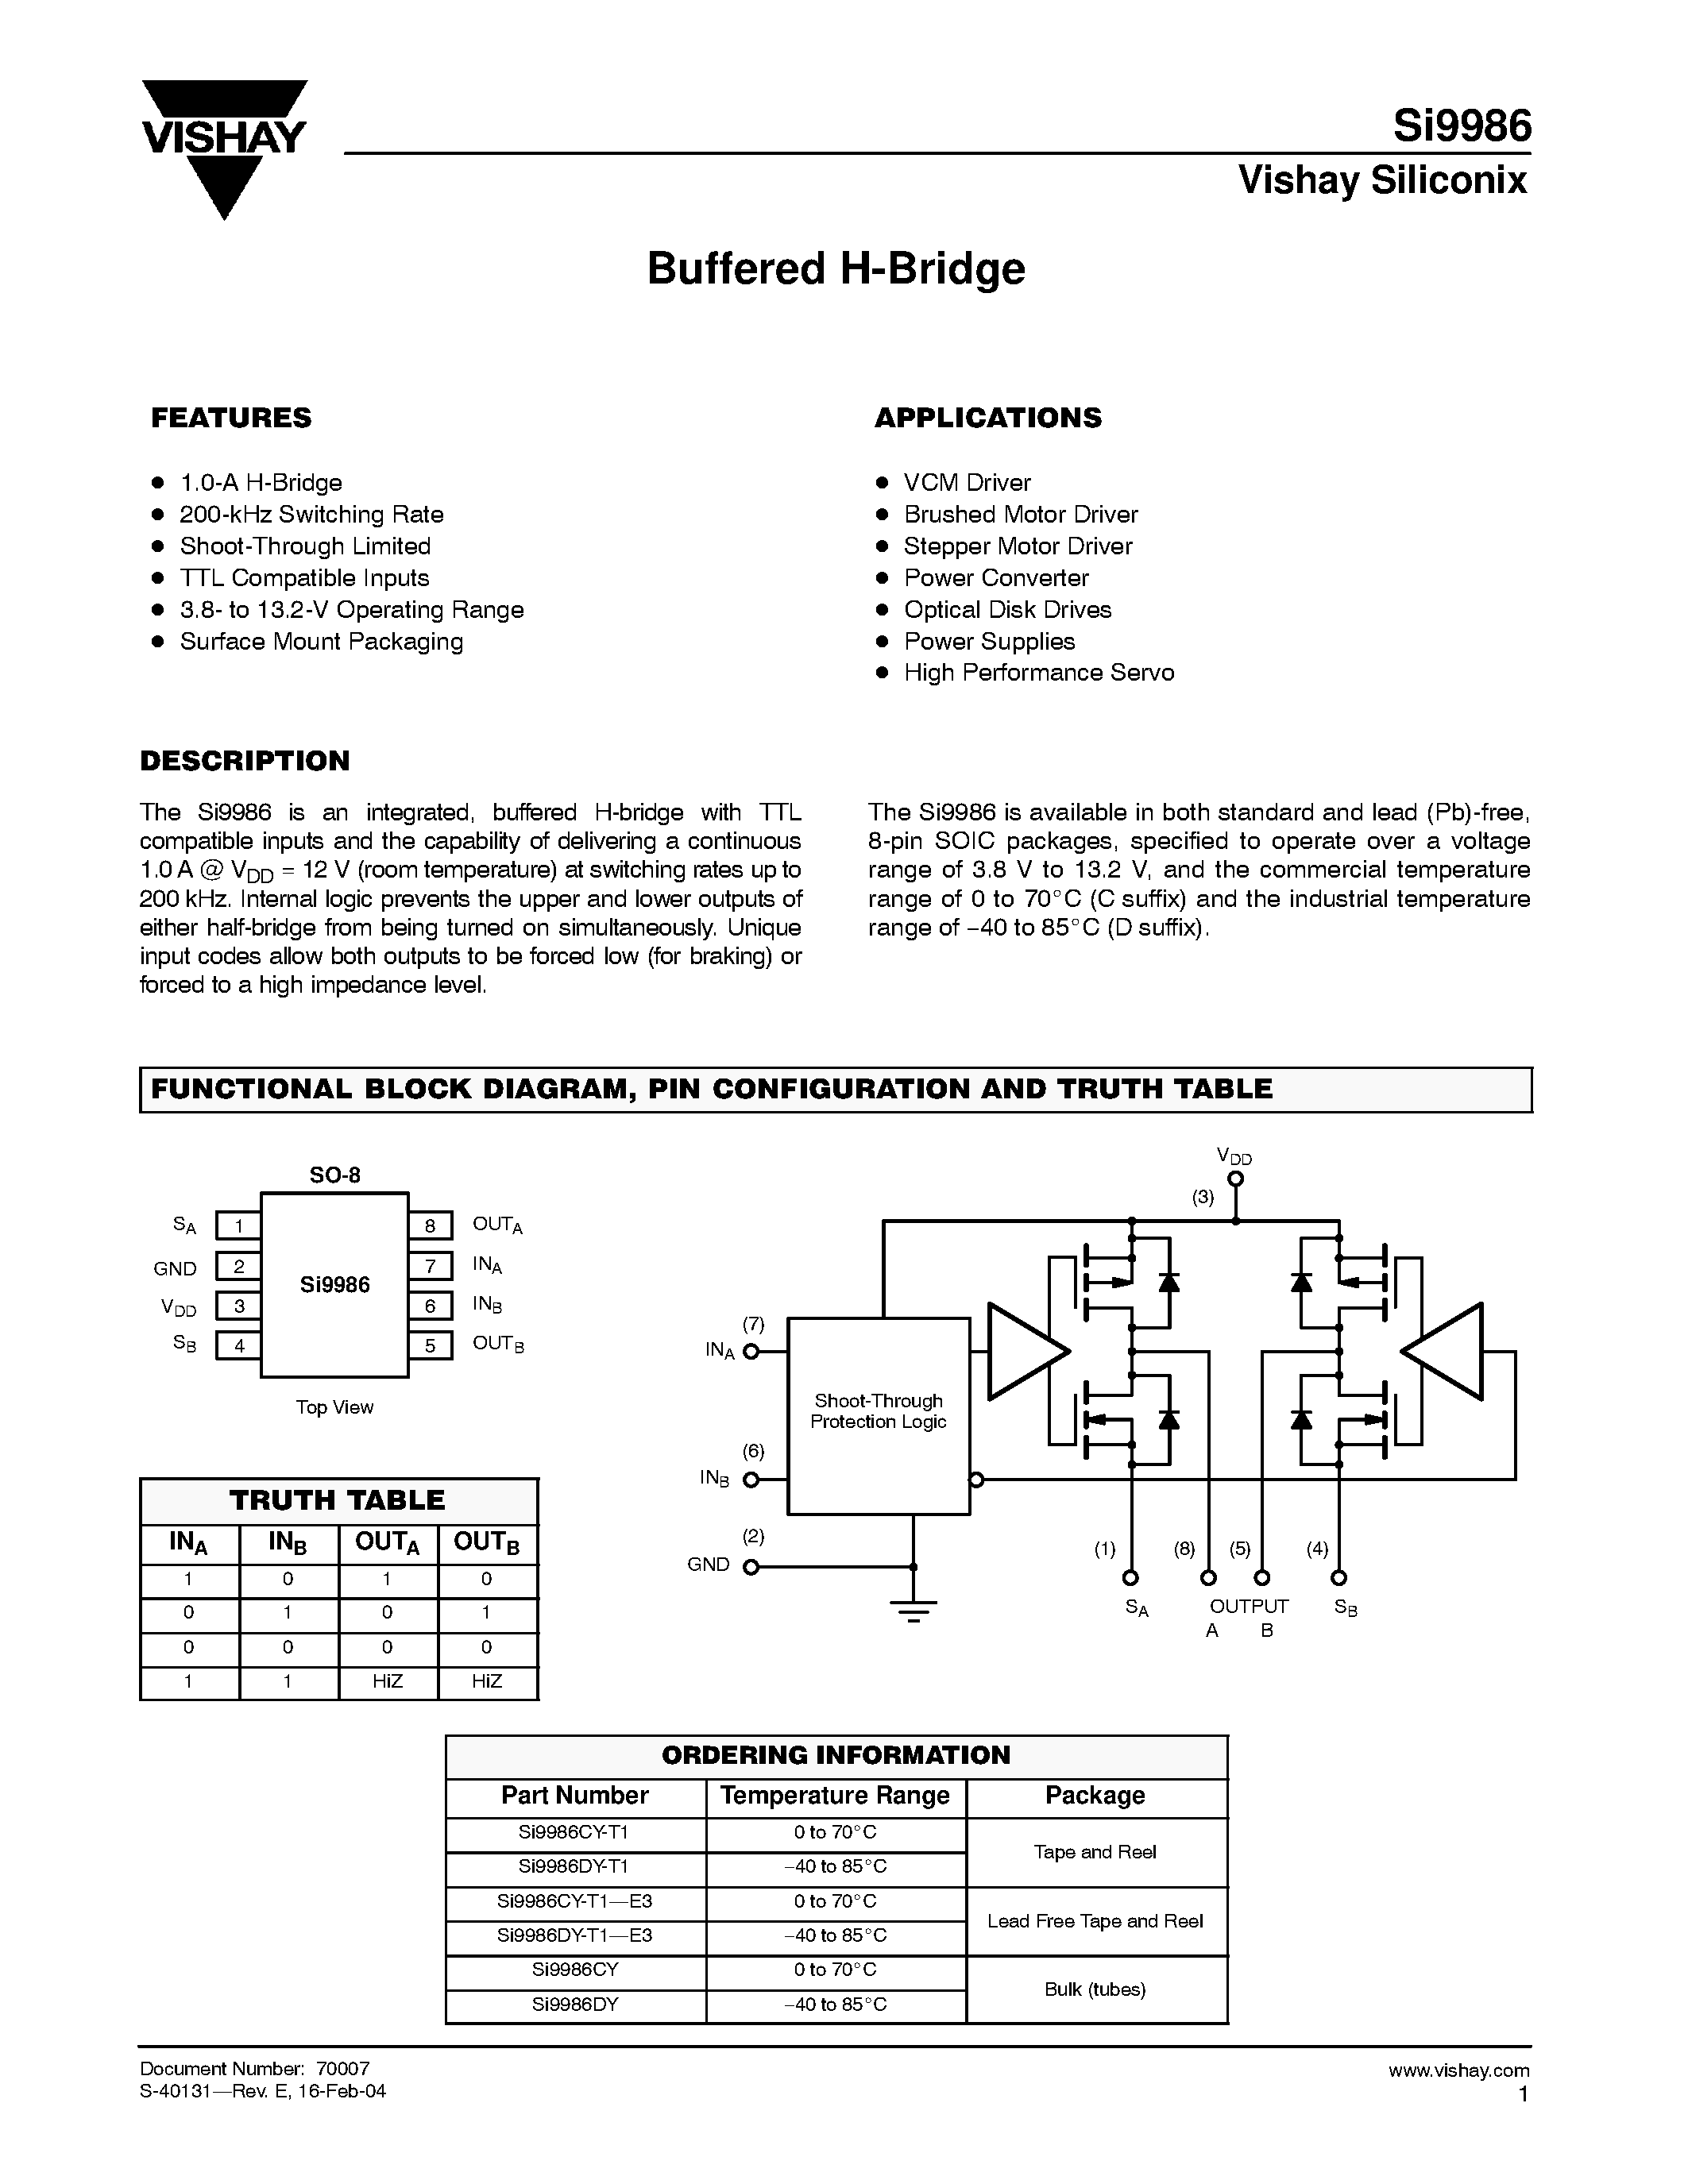 Datasheet Si9986DY - Buffered H-Bridge page 1